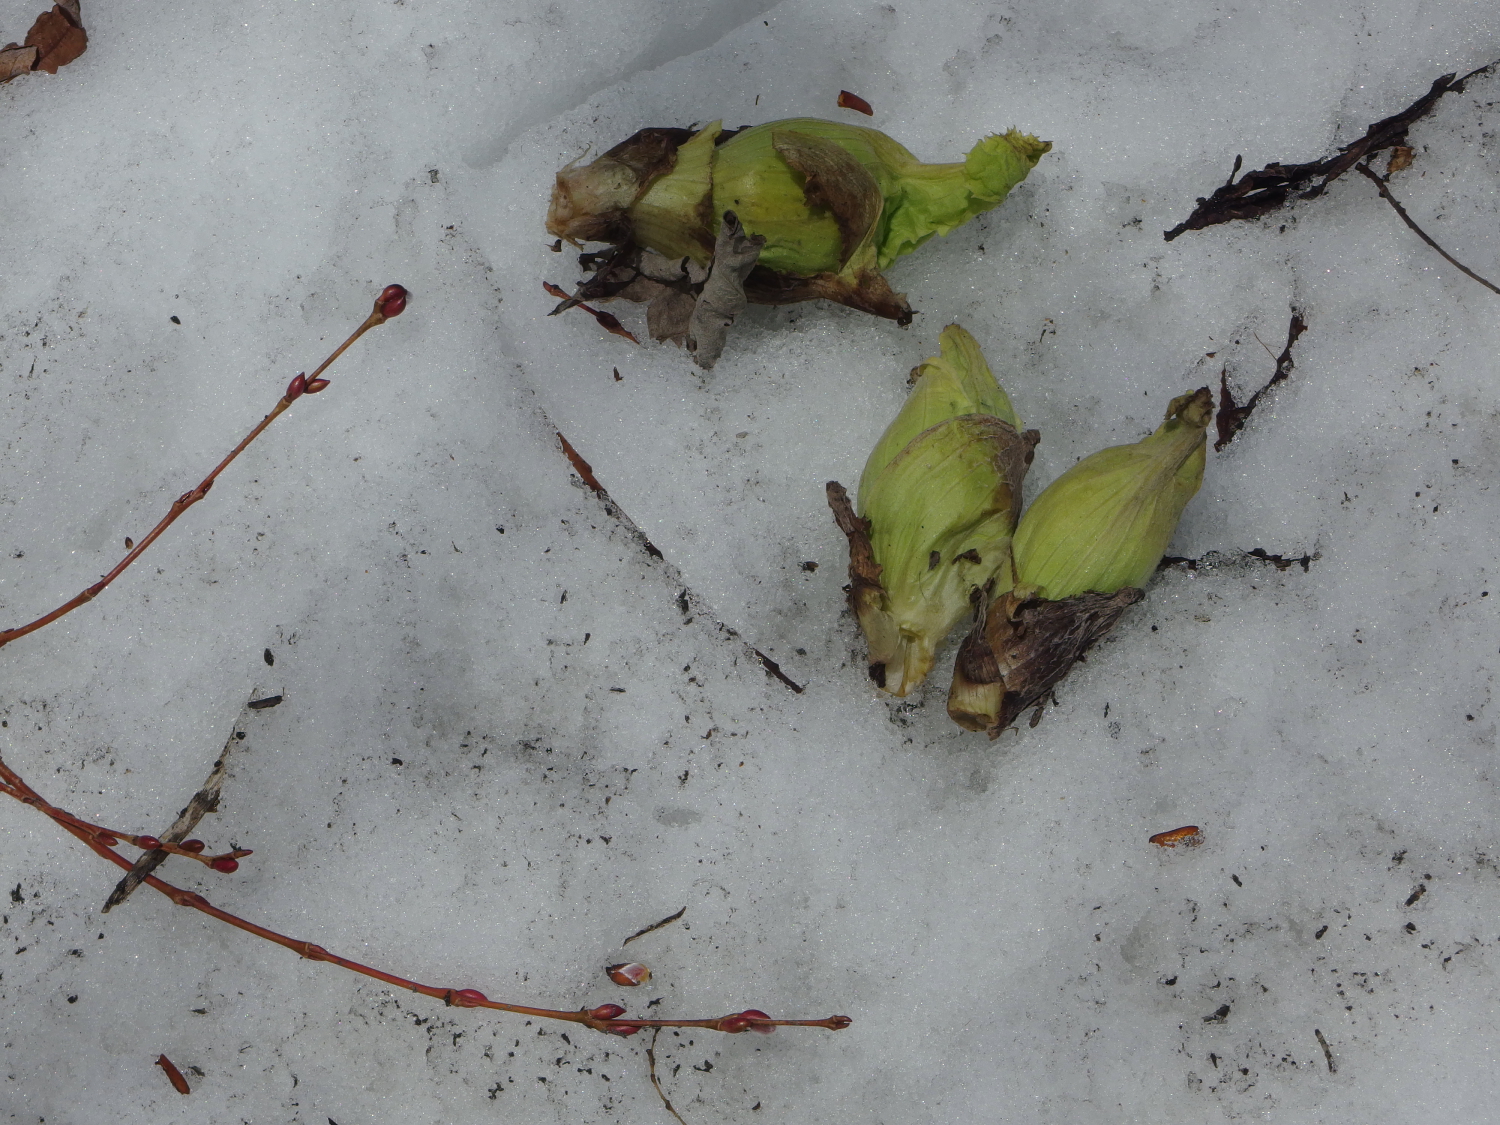 そして、考え事をしながら庭を歩いていると、庭の北側に残っていた雪の下からフキノトウが顔を出していました。